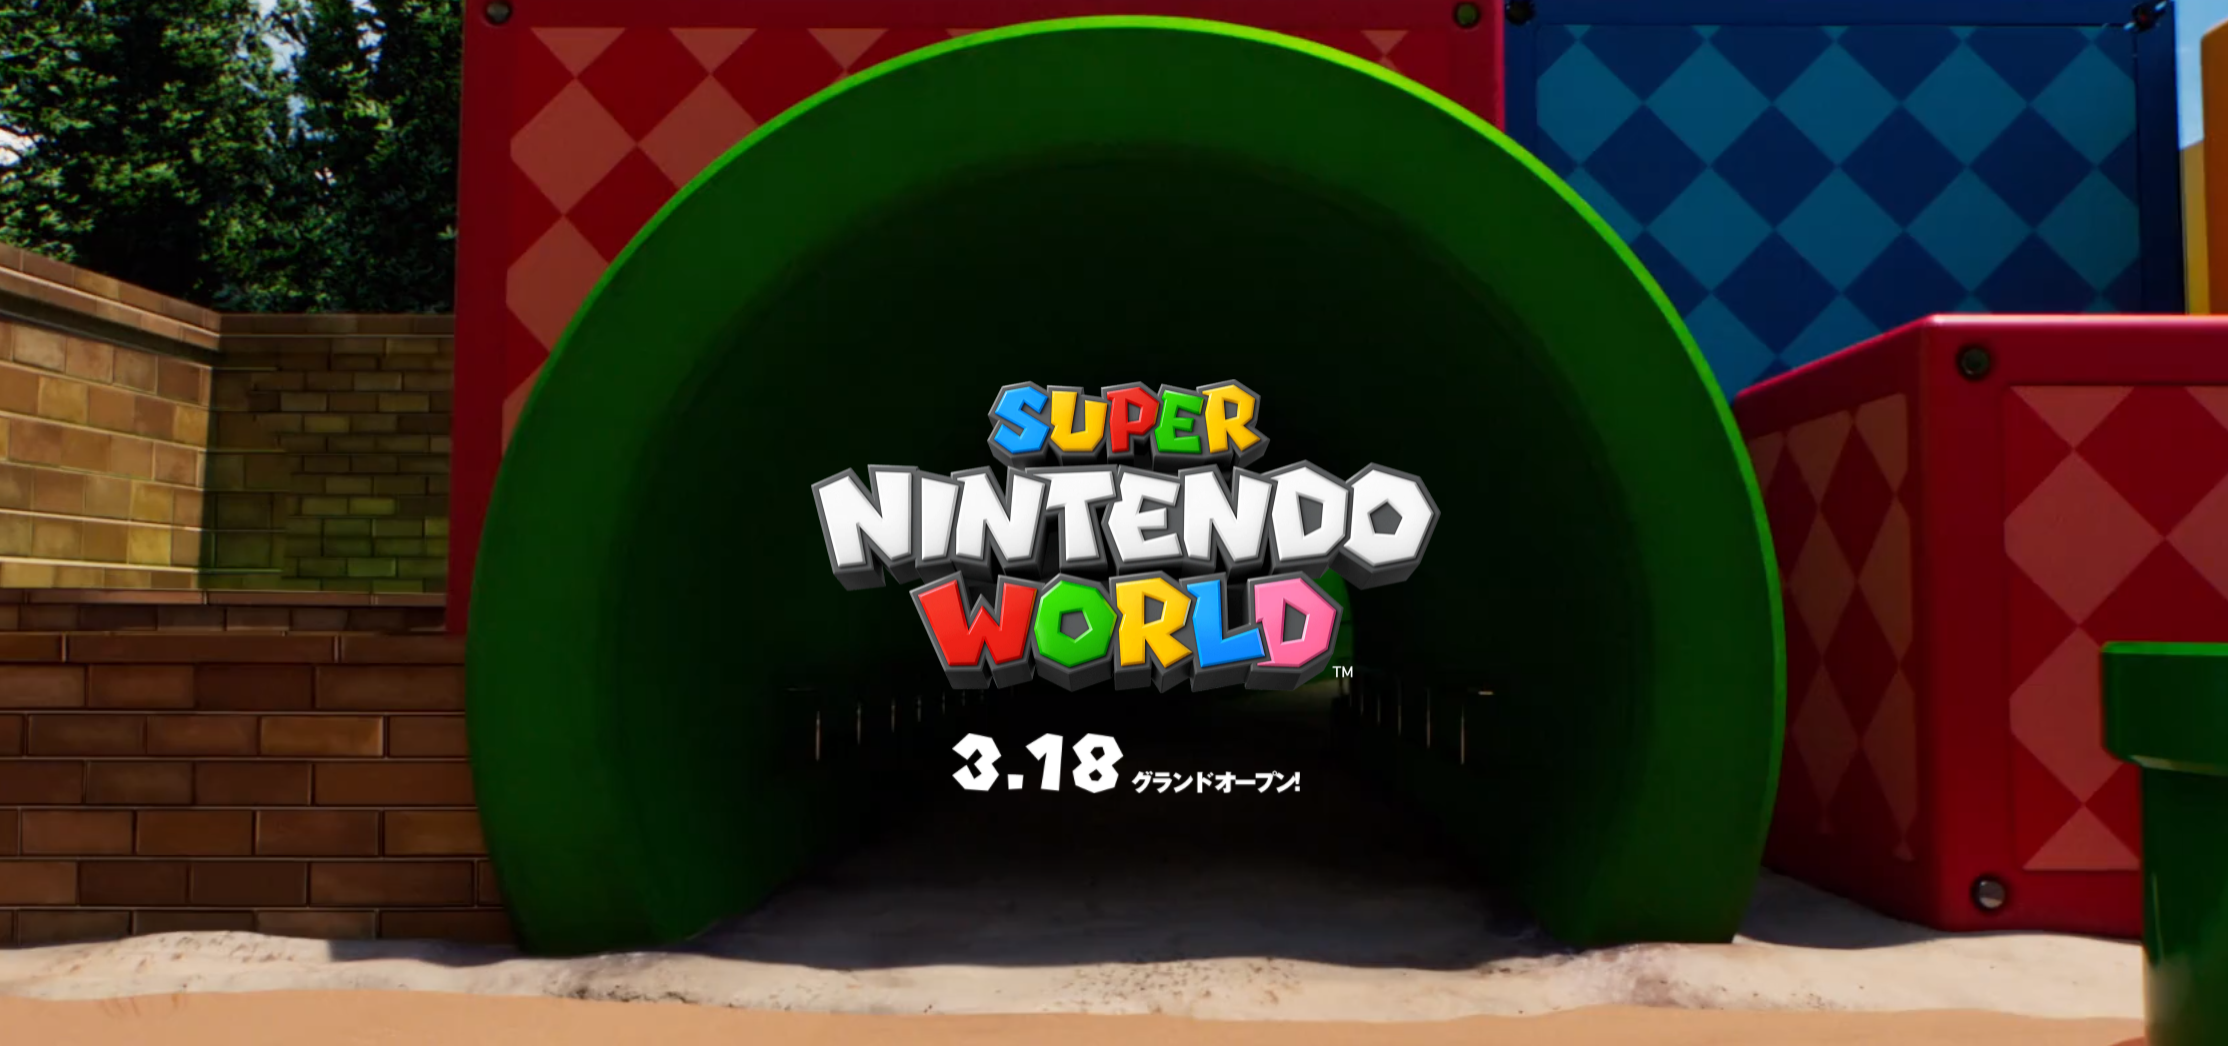 Super Nintendo World Officially opening next week